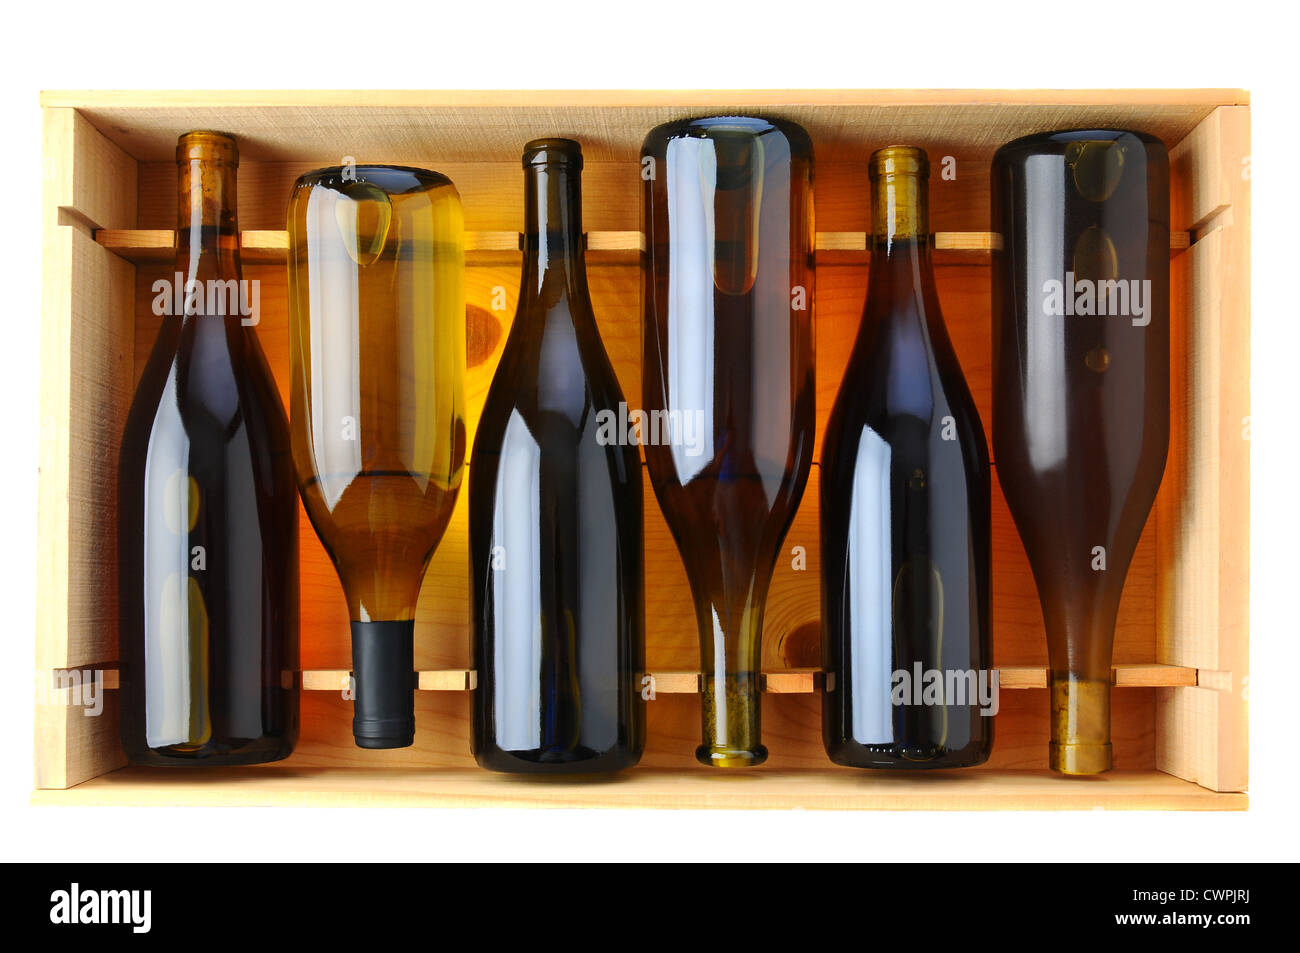 Six bouteilles de vin Chardonnay dans une caisse en bois, vue du dessus sur un fond blanc. Banque D'Images